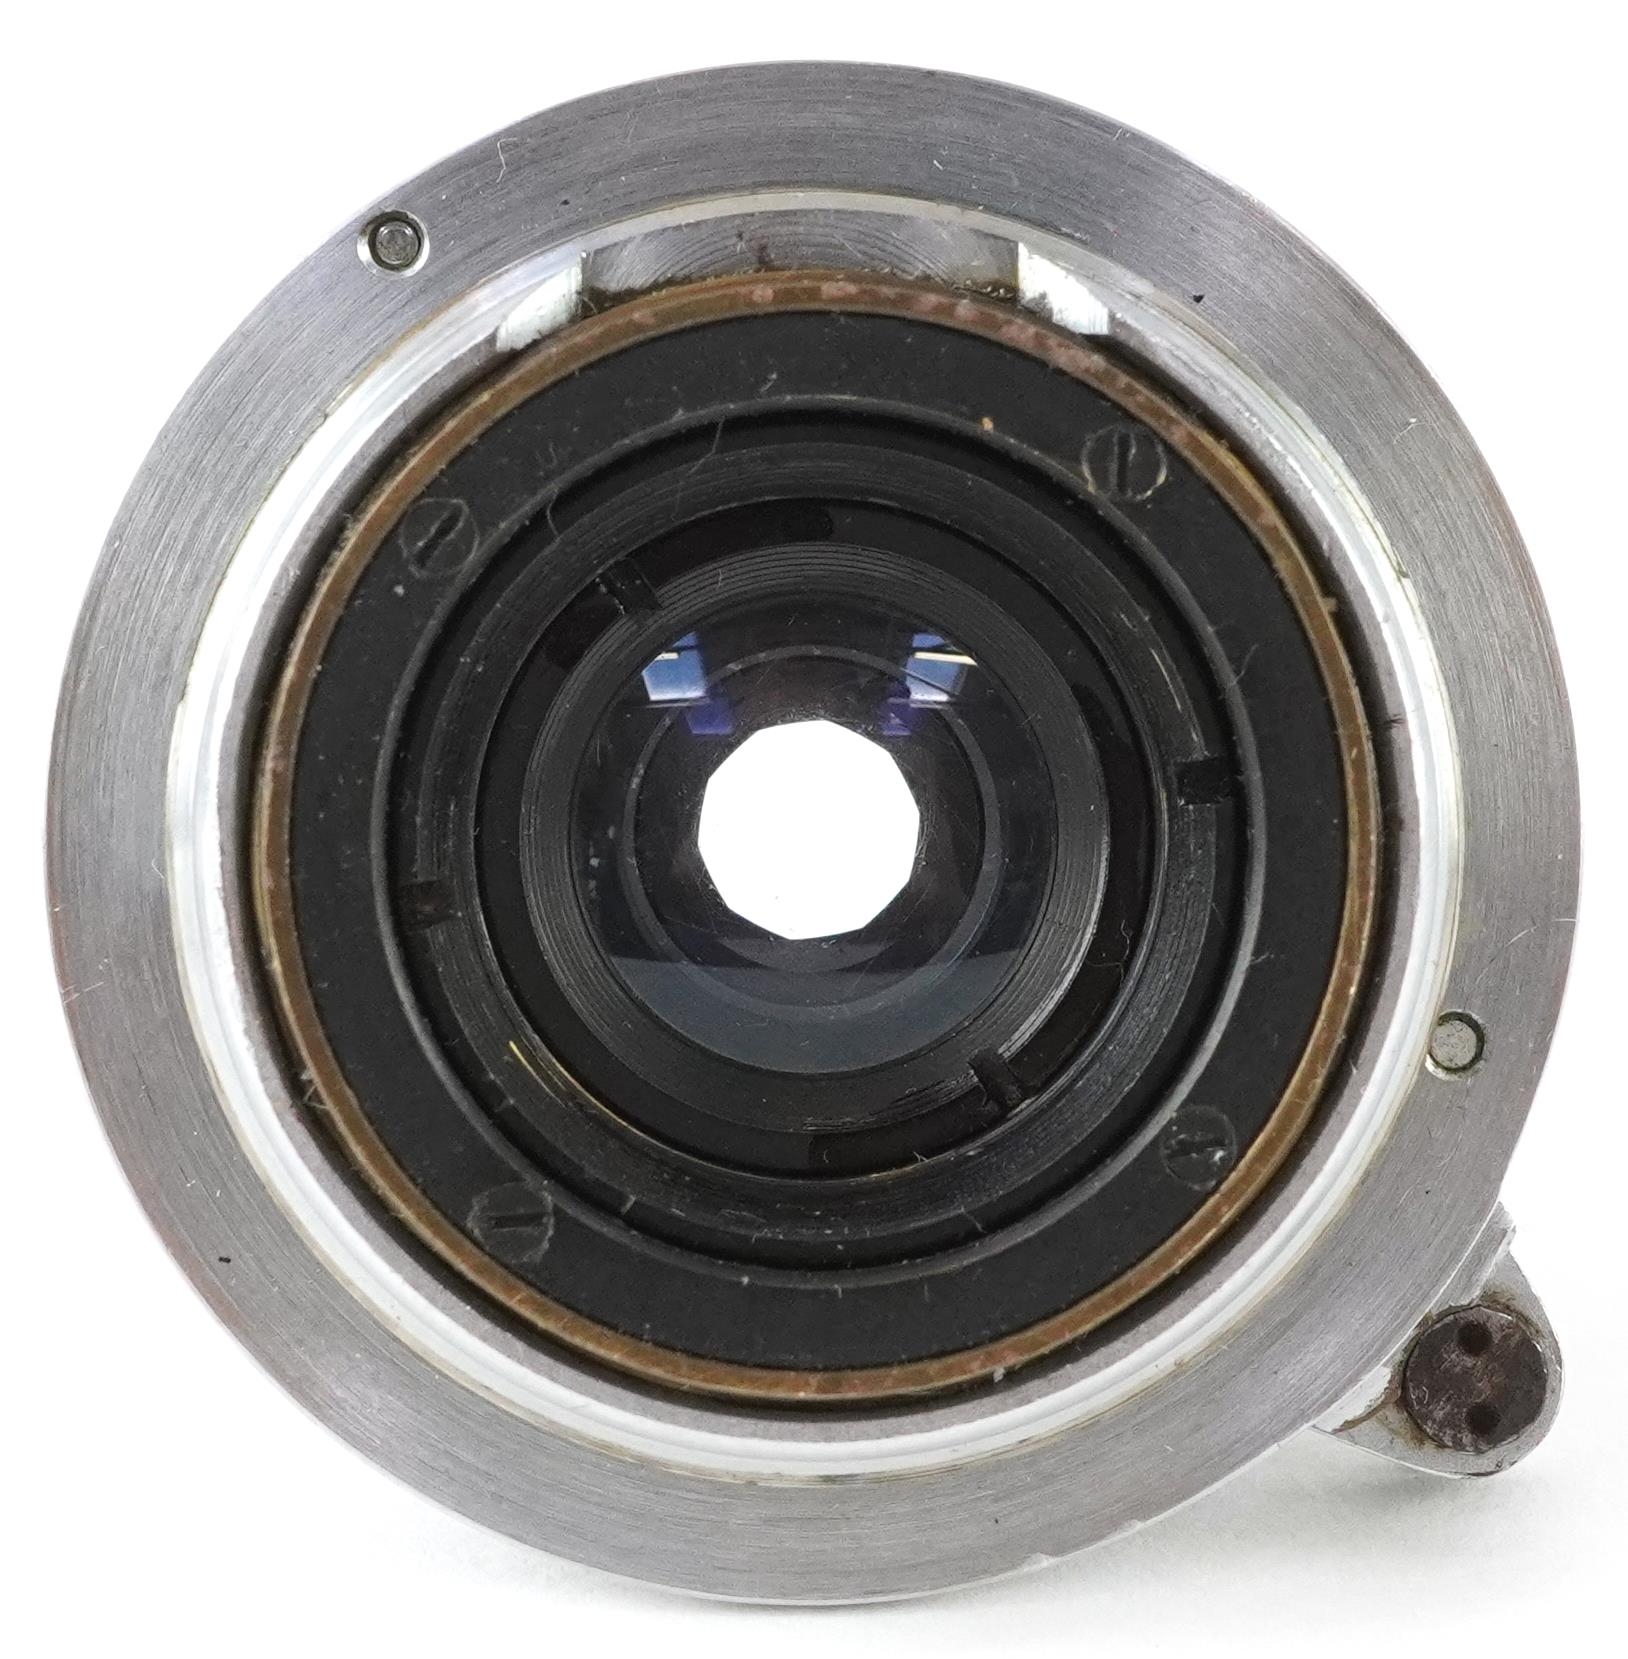 Leica Ernst Leitz Summaron F=3.5cm 1:3.5 camera lens, 5cm in diameter - Image 3 of 3